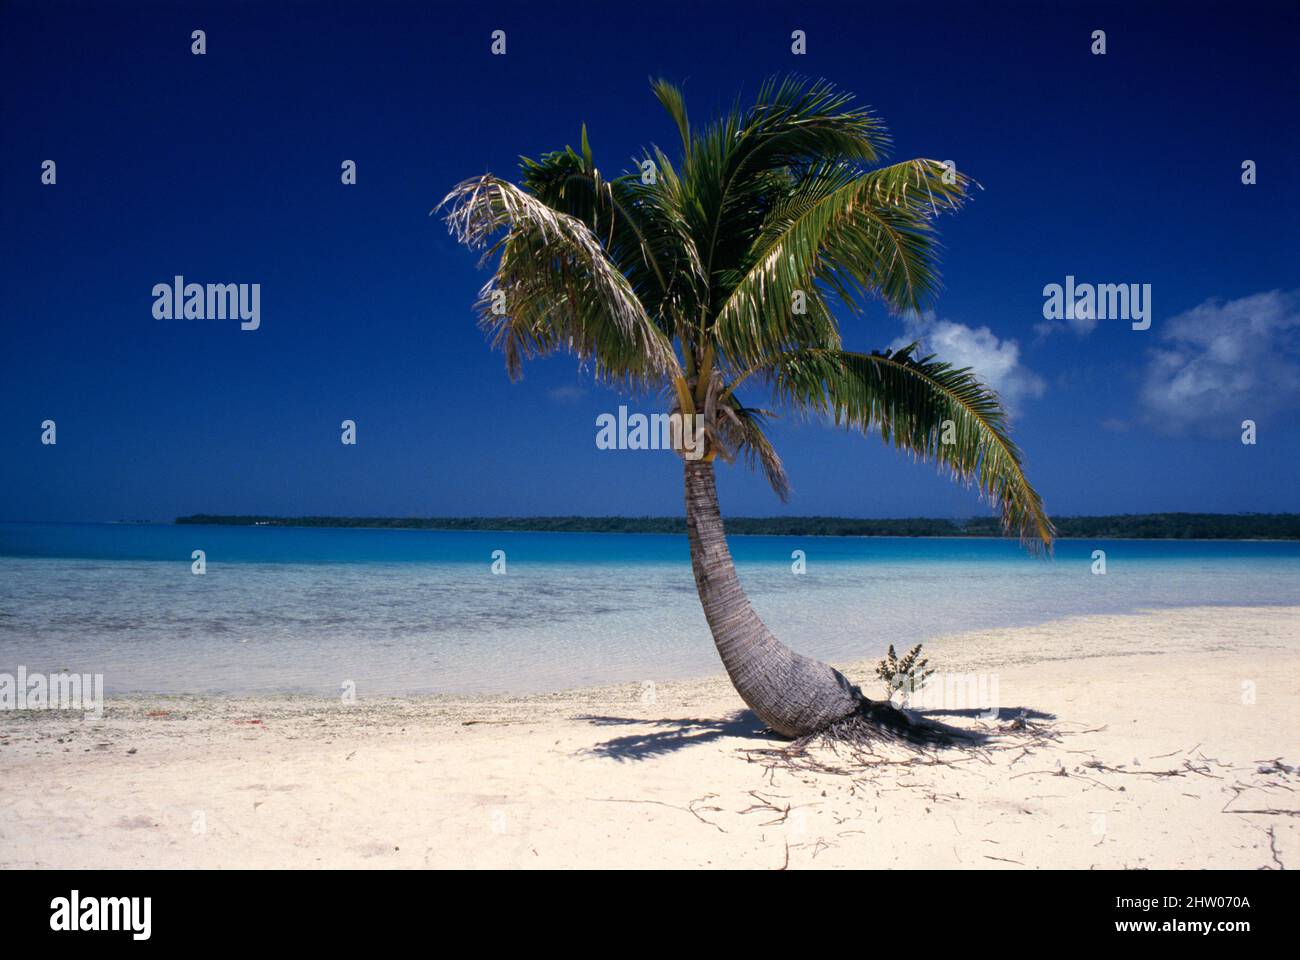 Islas Cook. Lone cocotero palmera en la playa de arena blanca. Foto de stock